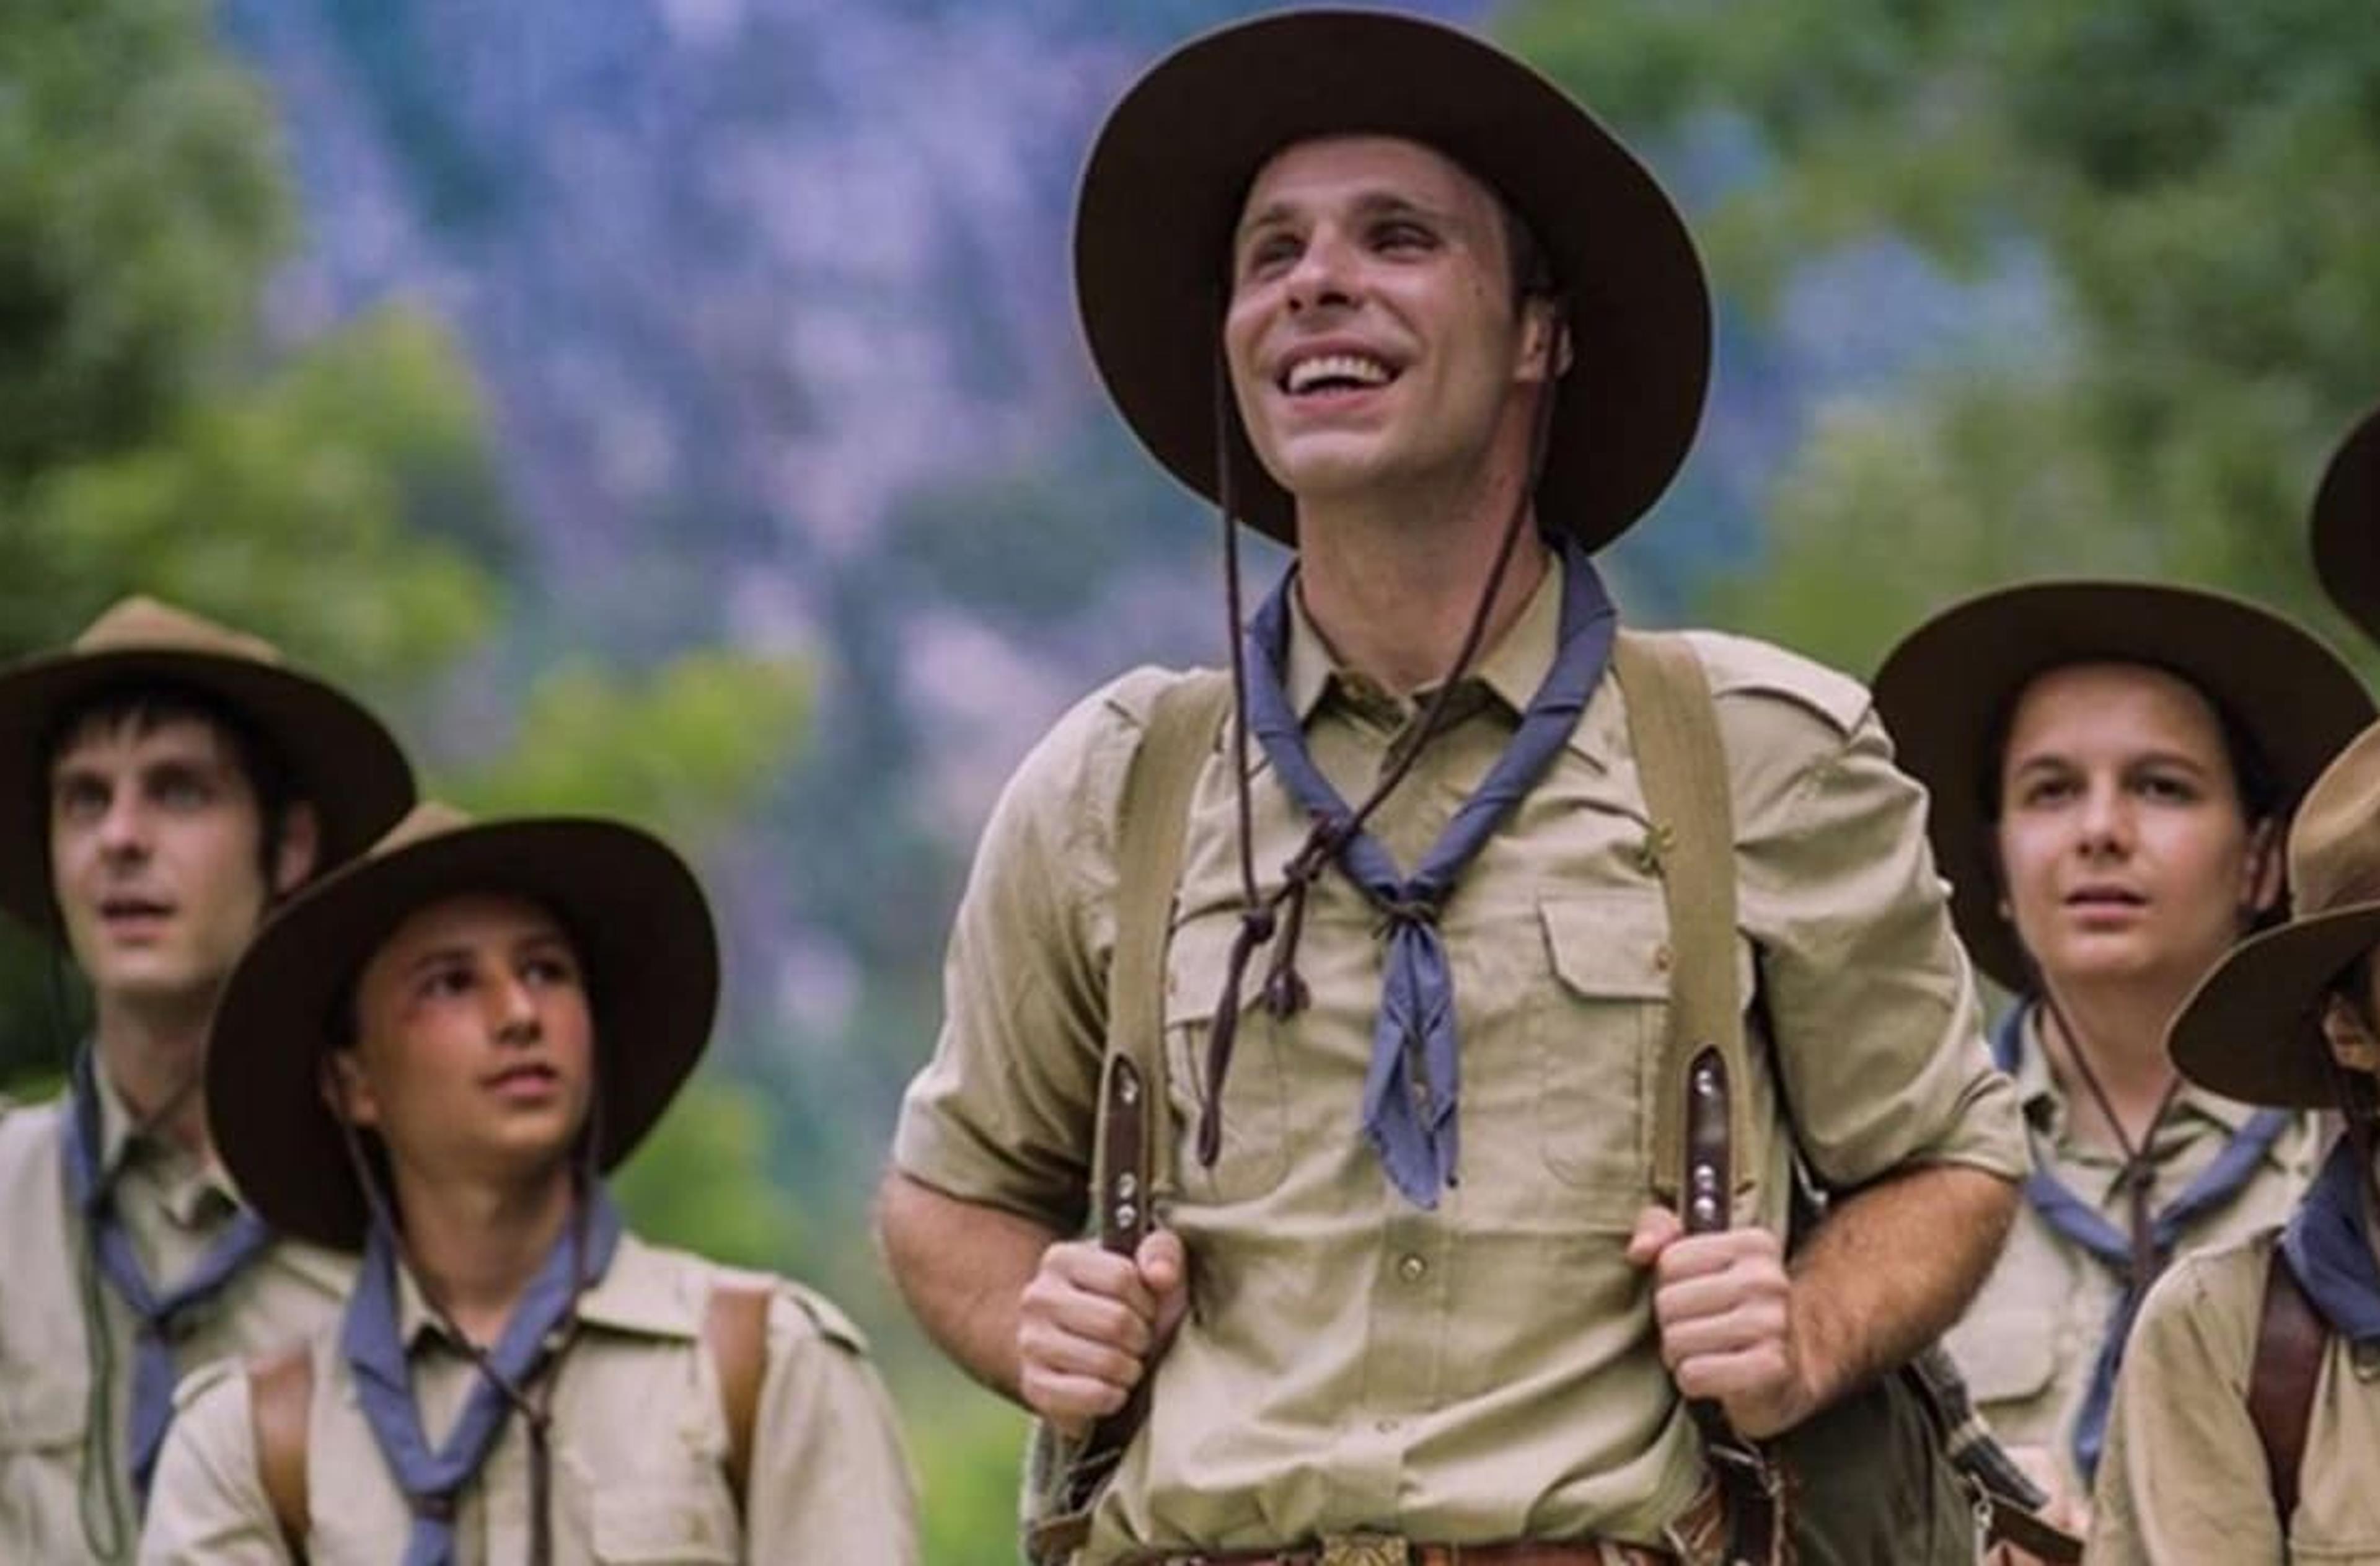 Le frasi migliori dell'indimenticabile film sugli scout ribelli "Aquile Randagie"